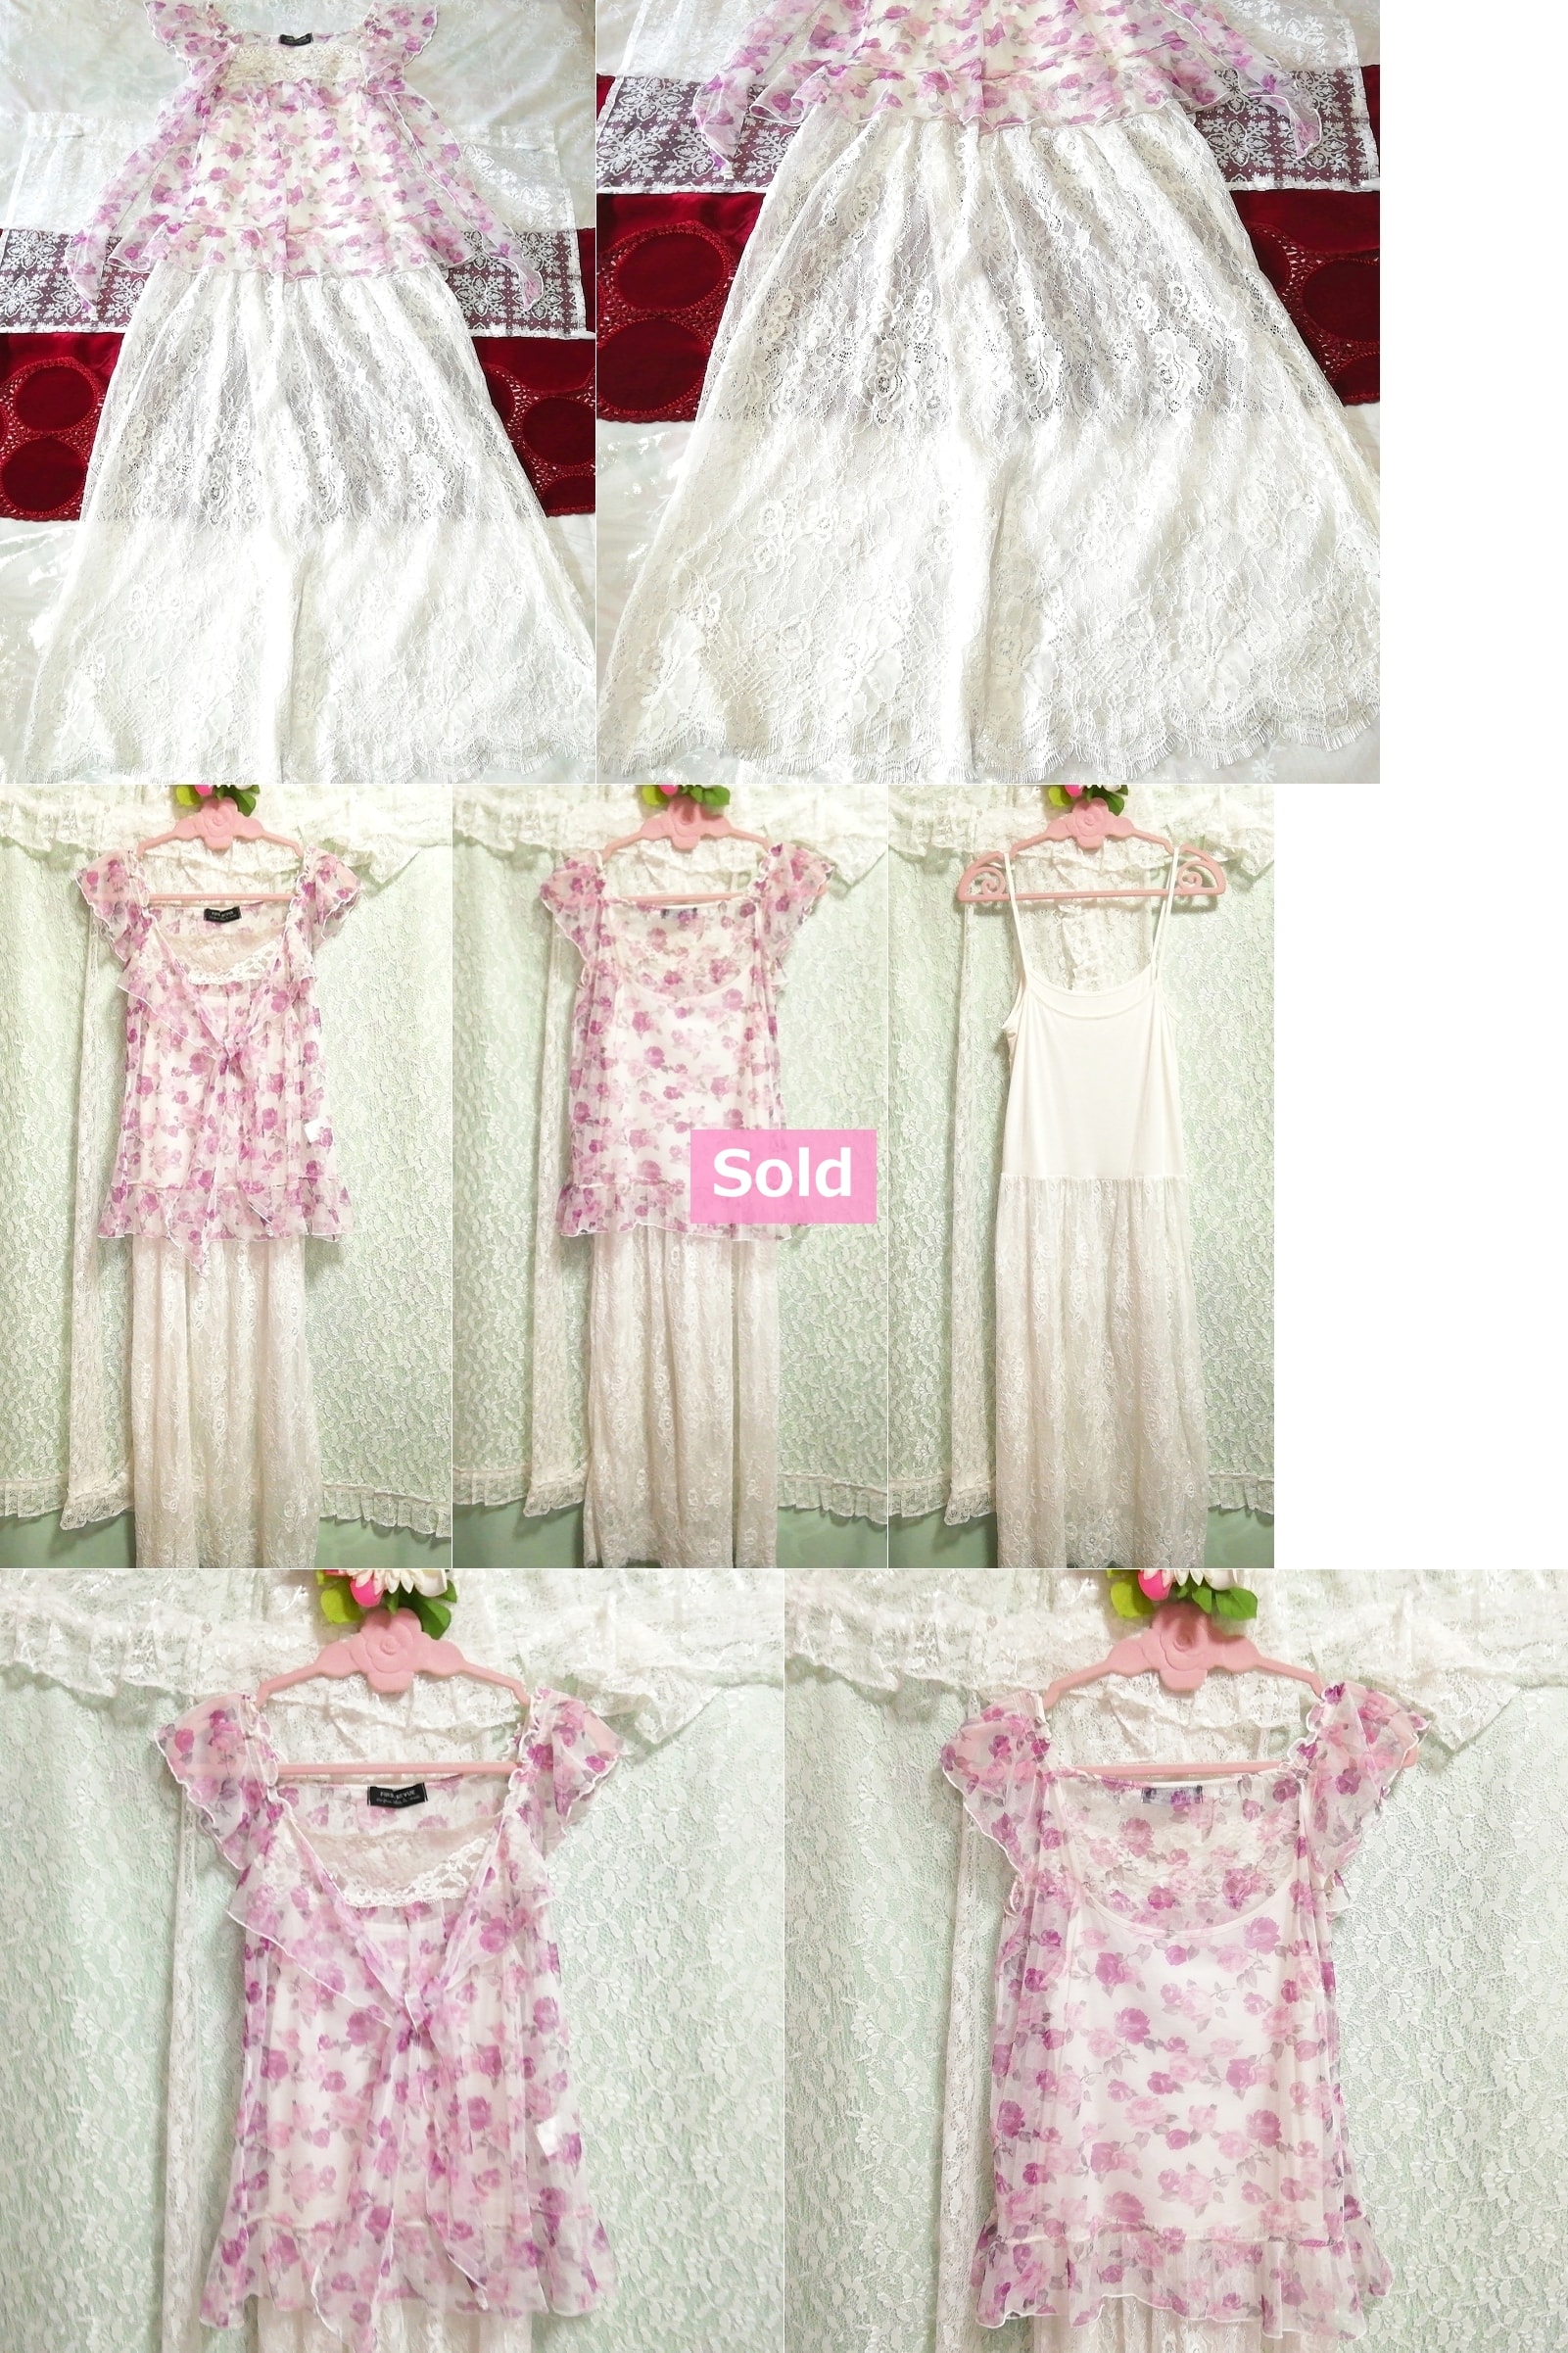 Vestido tipo babydoll camisola camisón negligee túnica transparente con estampado floral morado 2P, moda, moda para damas, ropa de dormir, pijama